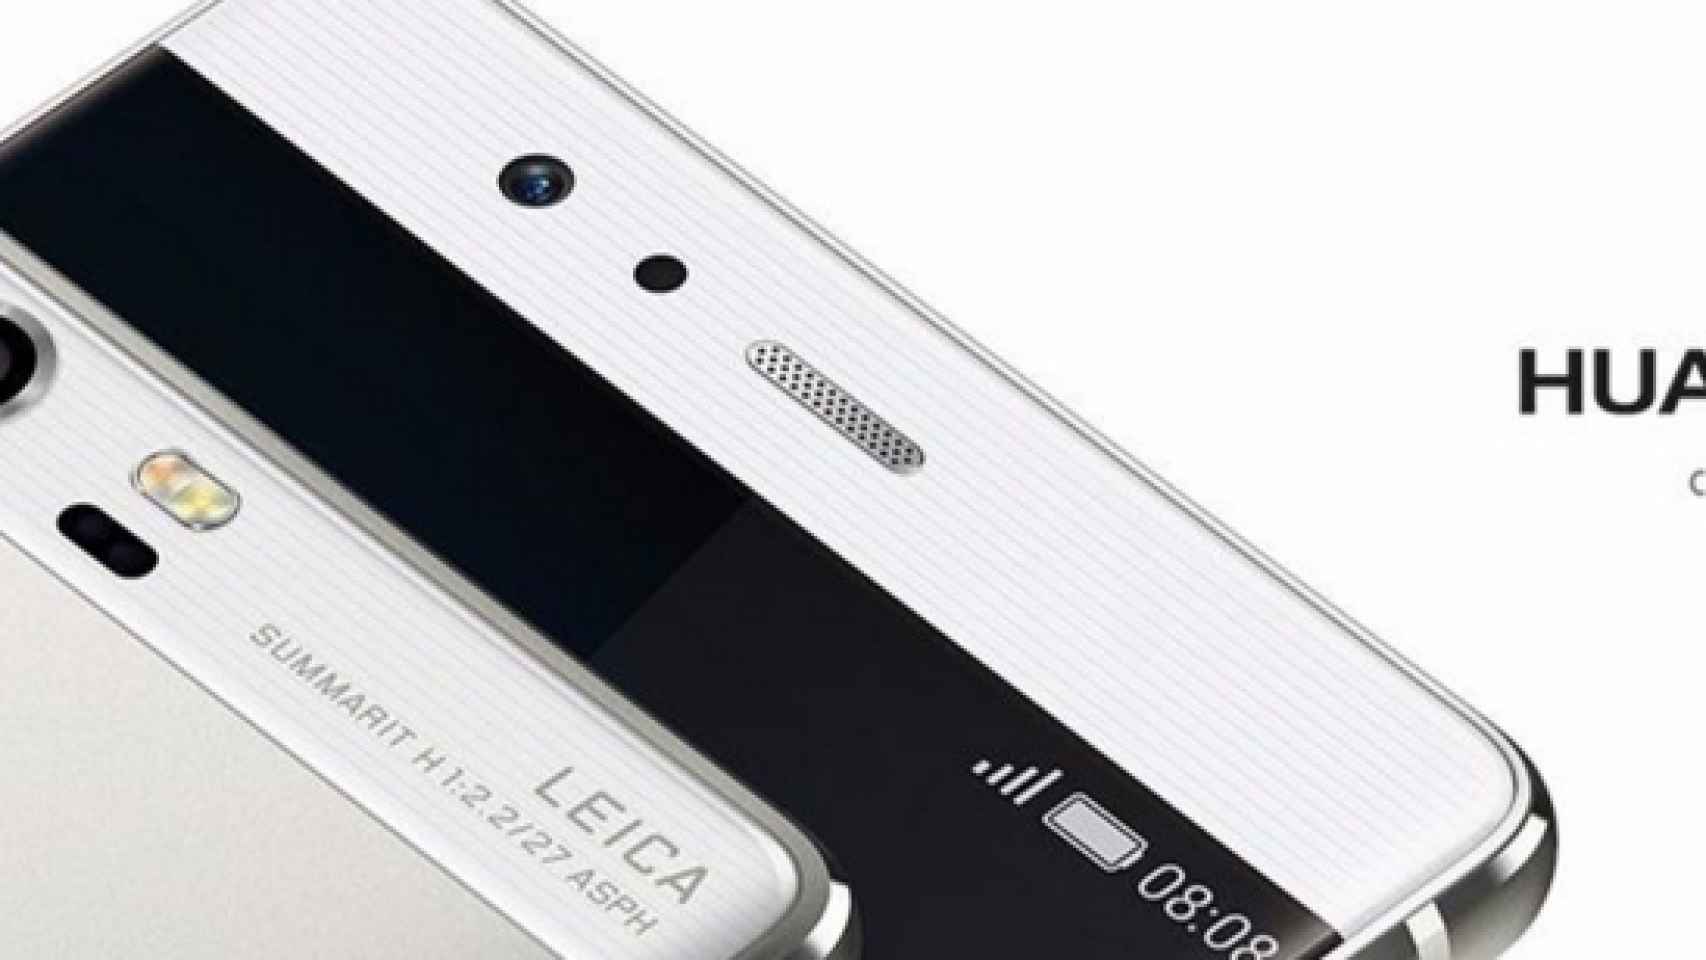 El Huawei P9, cara a cara frente a sus competidores